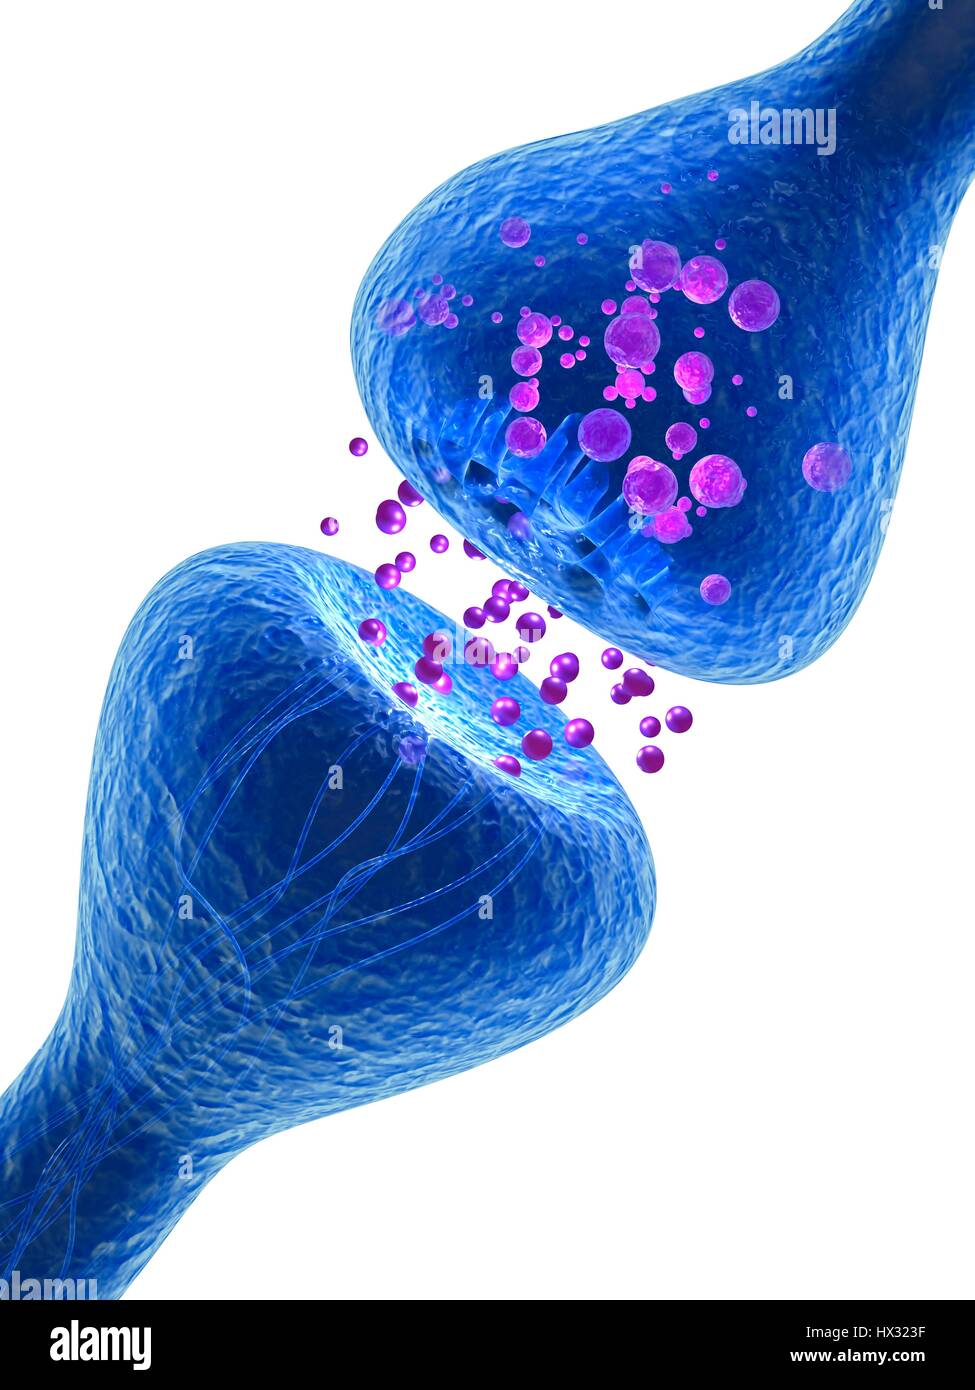 Synapse. Illustration d'ordinateur d'une synapse, la jonction entre deux neurones. Synapses transmettent les signaux électriques d'une cellule nerveuse à l'autre. Lorsque le signal atteint la synapse elle déclenche la libération de substances chimiques appelées neurotransmetteurs. Les neurotransmetteurs traversent un écart microscopique appelé fente synaptique et passer par satellite récepteur dans la cellule nerveuse (en haut), où elles déclenchent une impulsion électrique. Banque D'Images